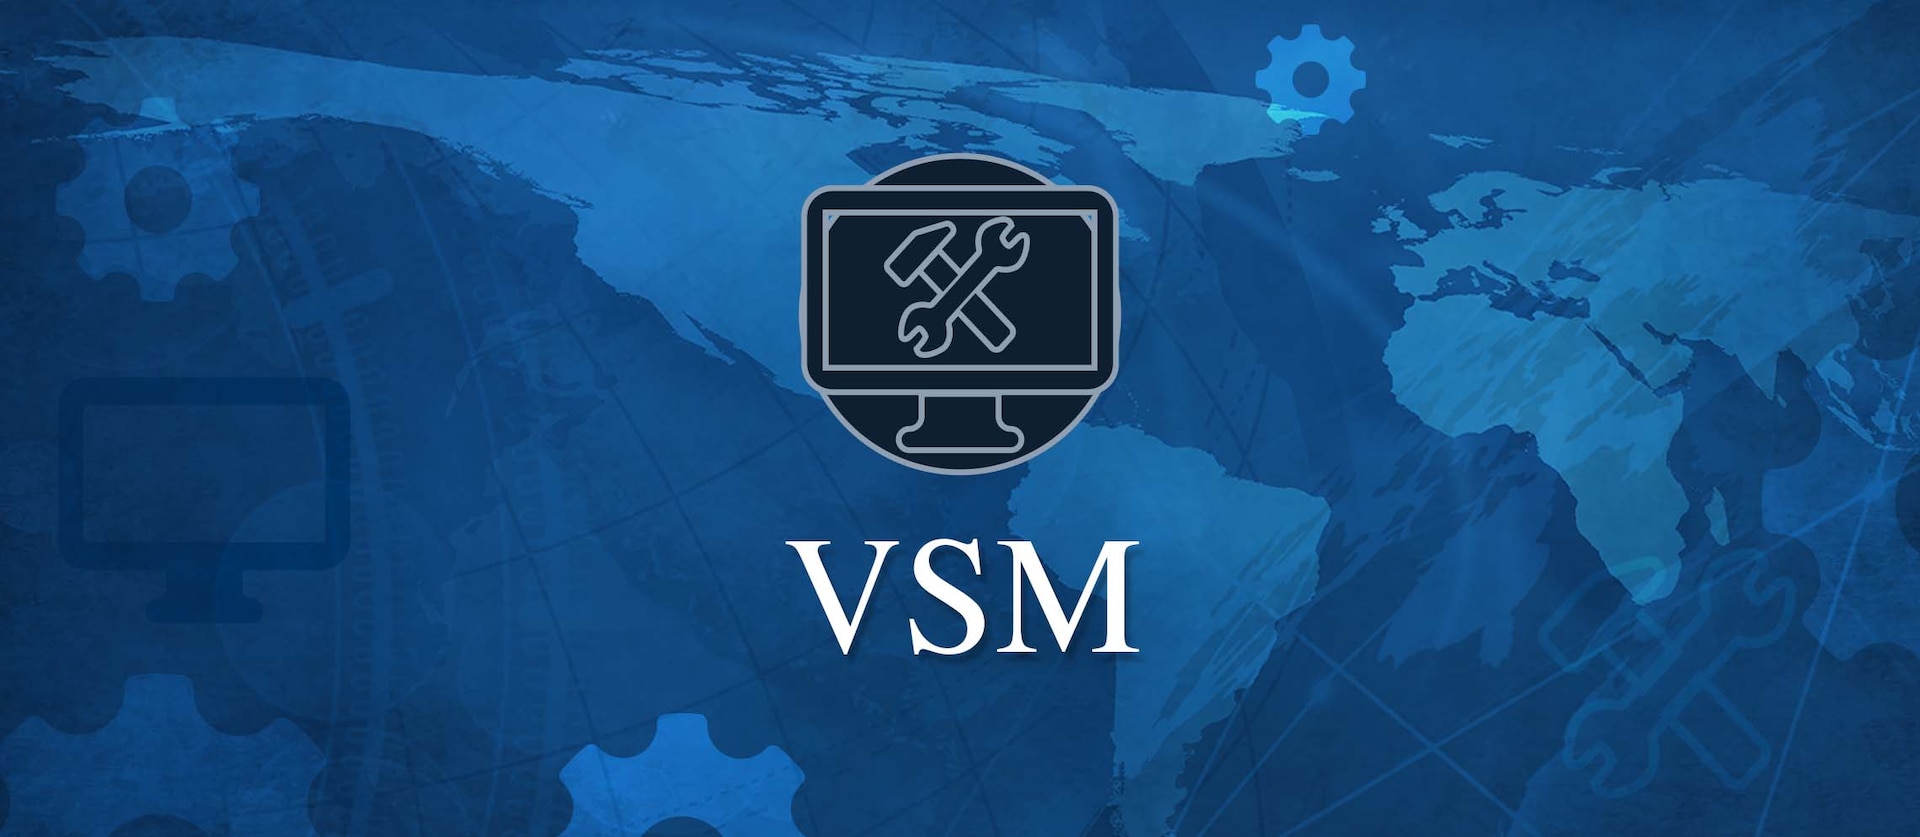 Banner for VSM application